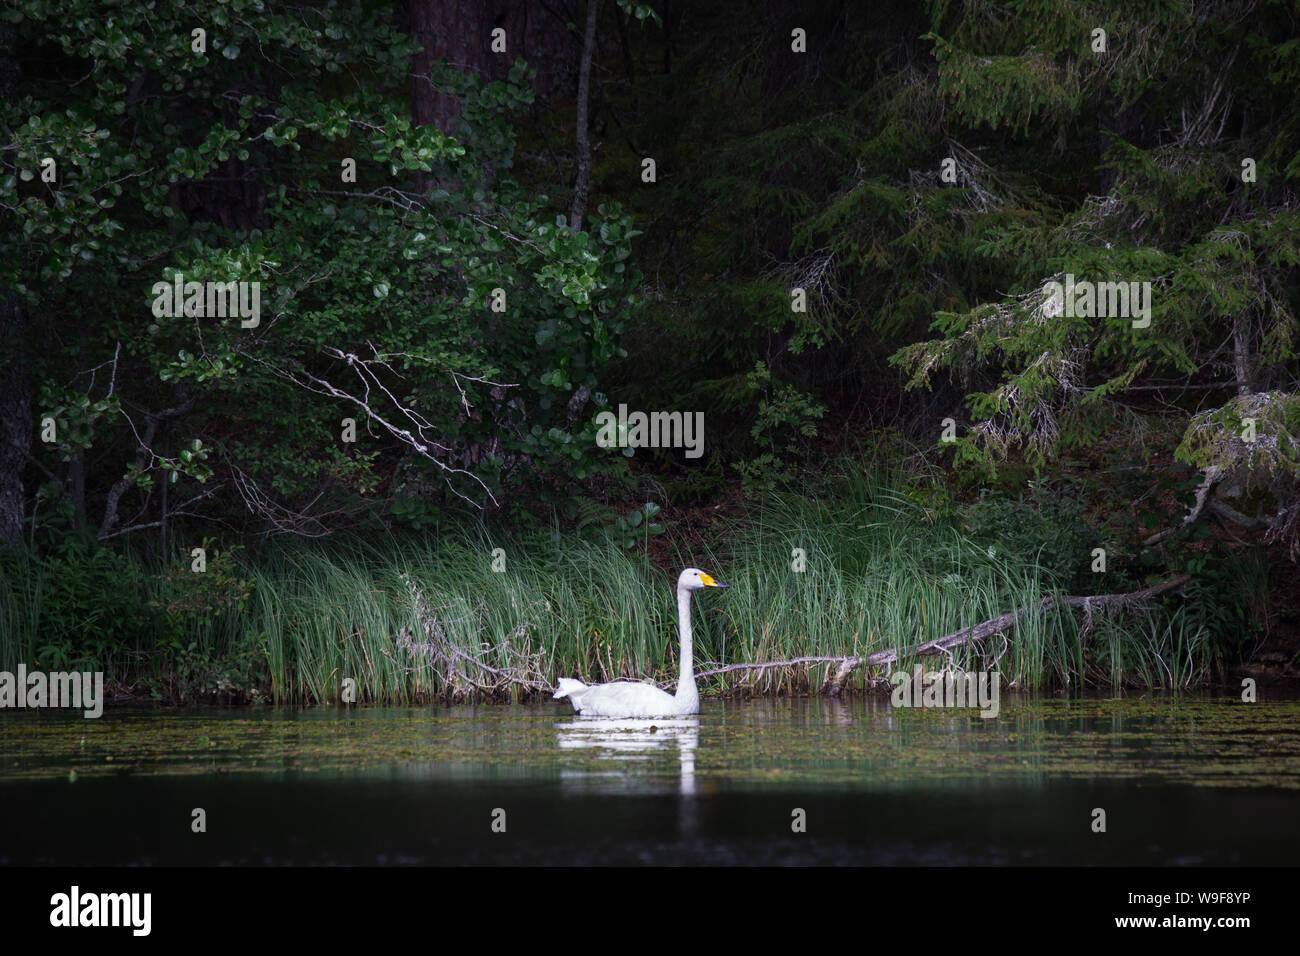 Un White Swan (Cygnus cygnus) nella parte anteriore di una misteriosa foresta verde Foto Stock